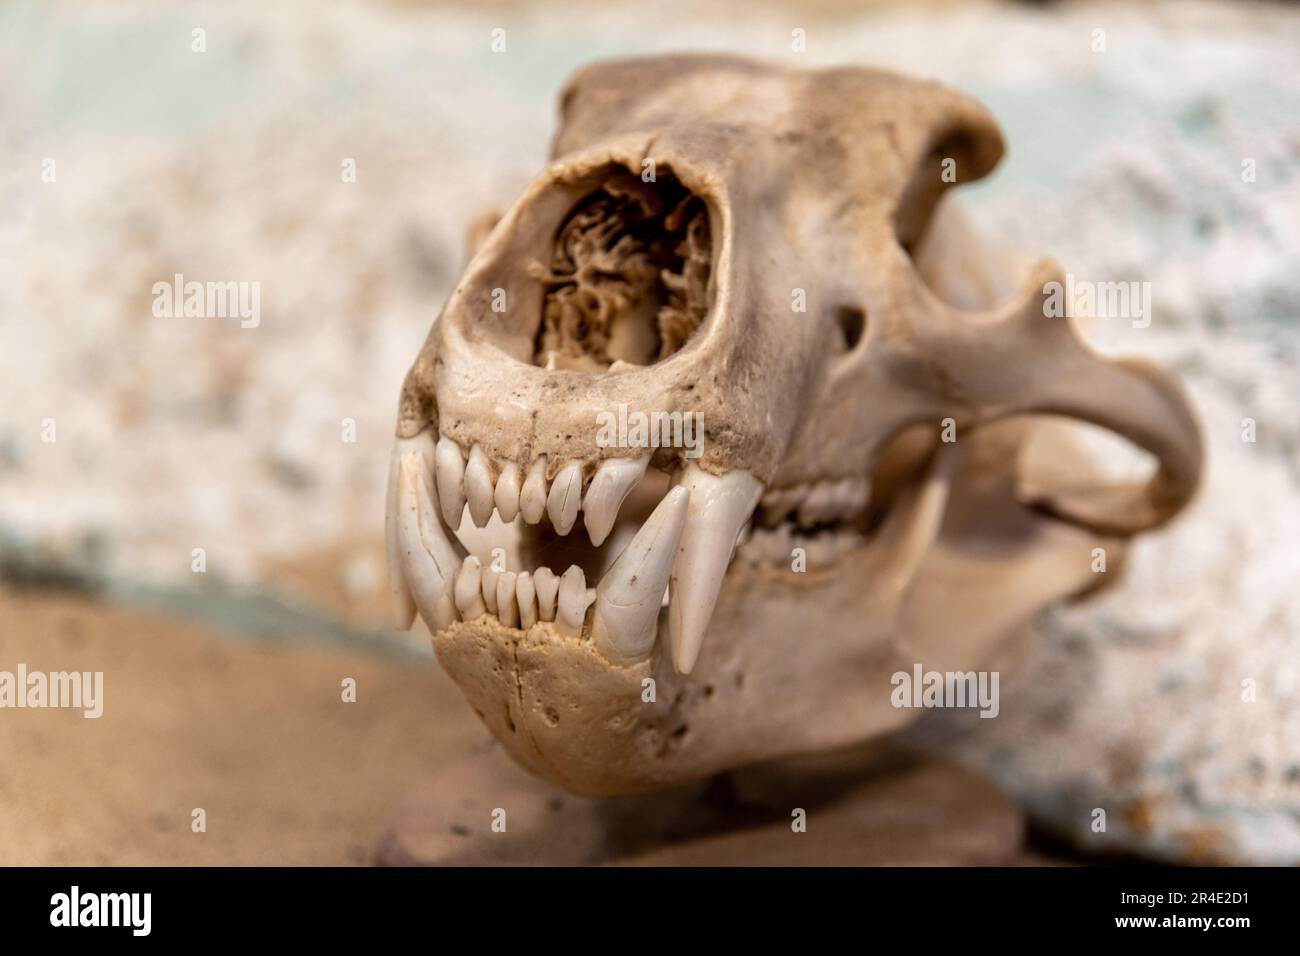 Cranio di un orso grizzly primo piano con fondo sfocato, grandi denti pronunciati in vista delle ossa testa di orsi. Foto Stock